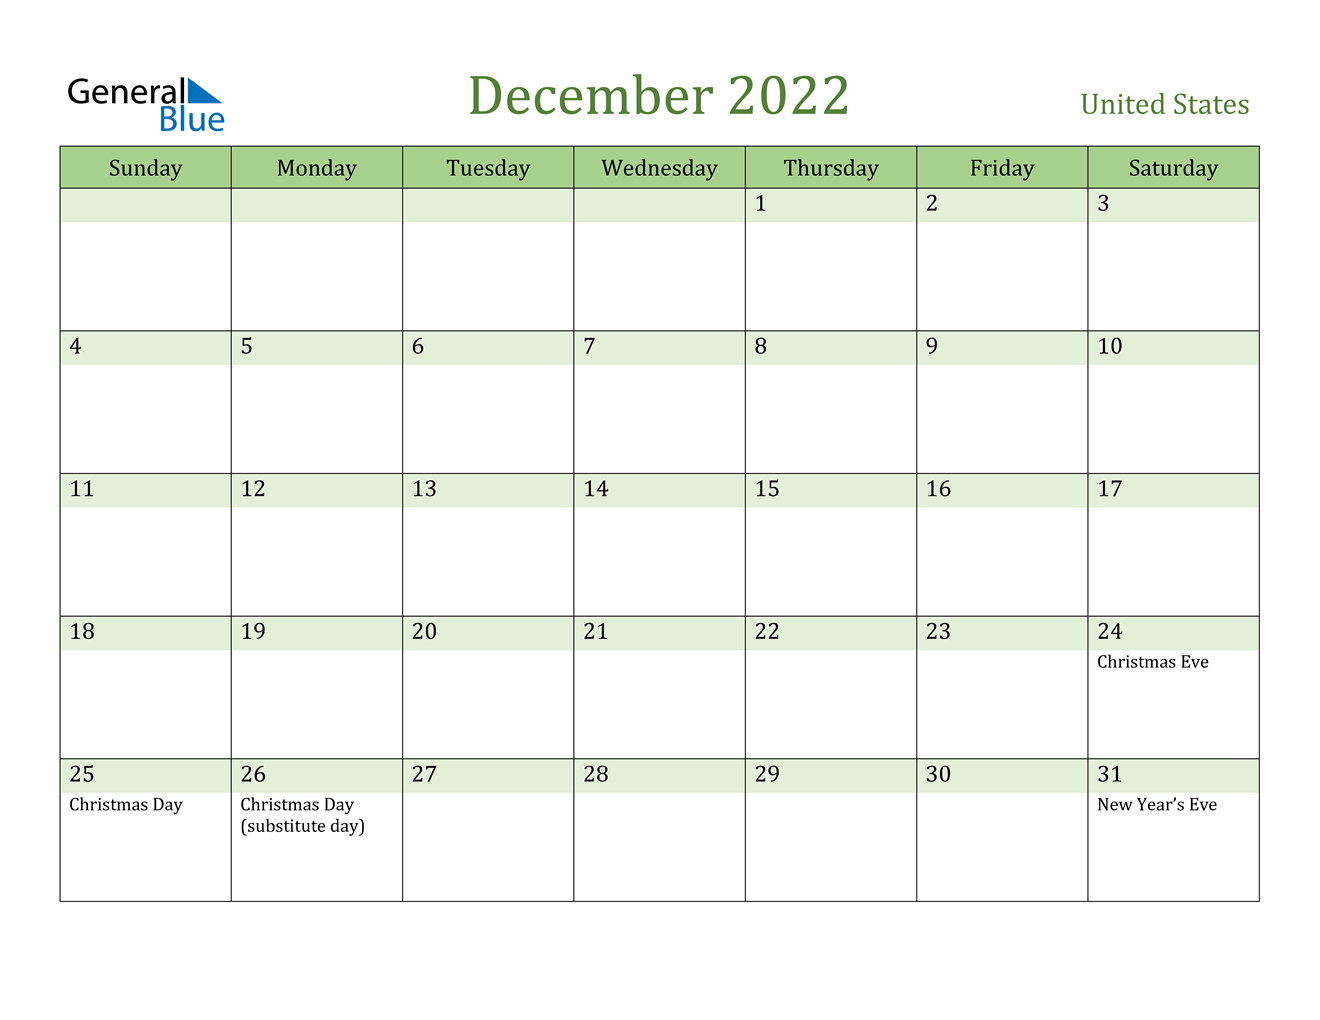 December 2022 Calendar - United States  December 2022 Calendar Images